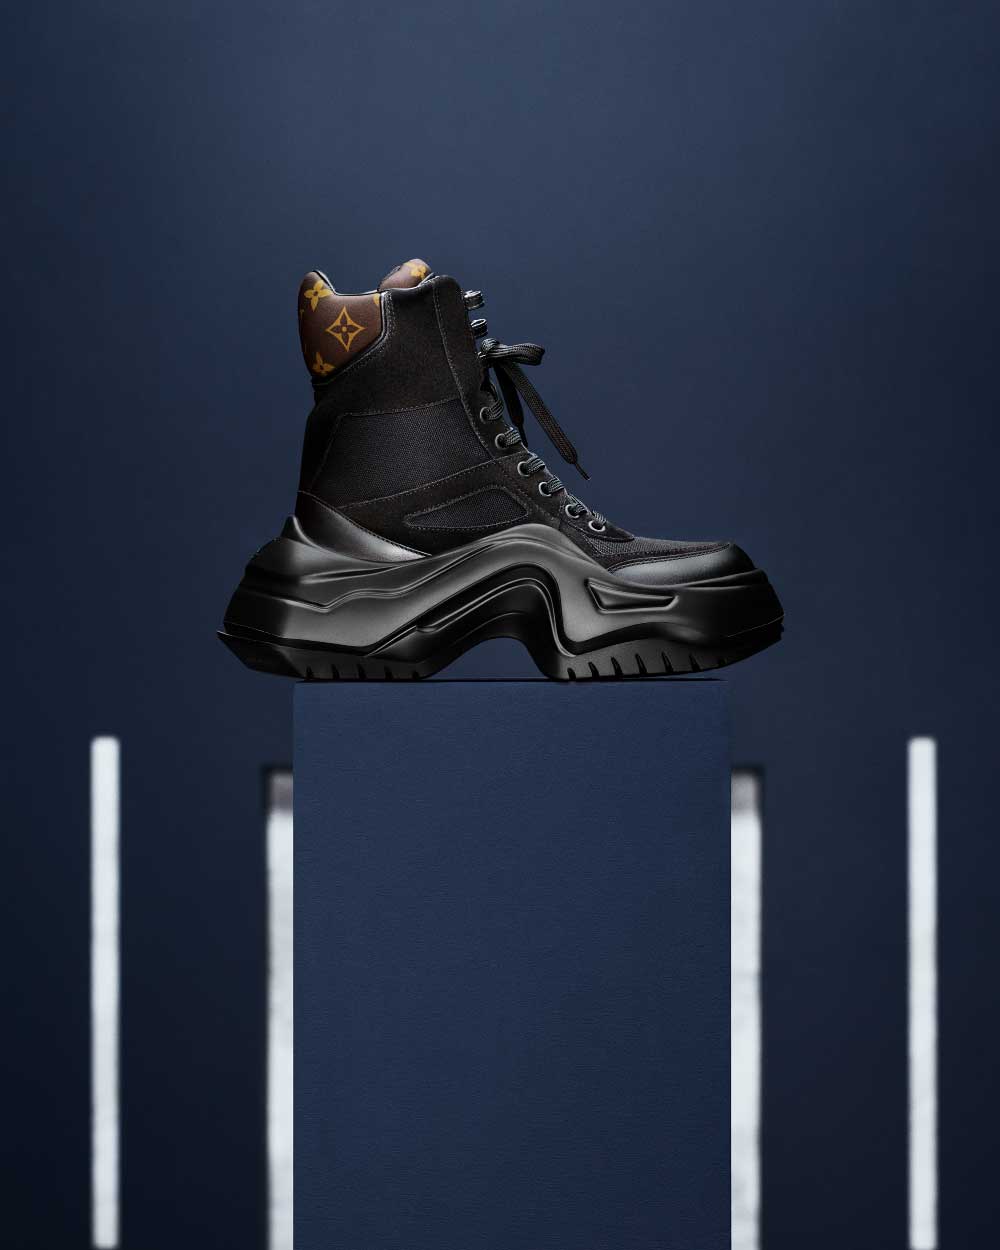 botas LV Archlight 2.0 louis vuitton calzado de culto